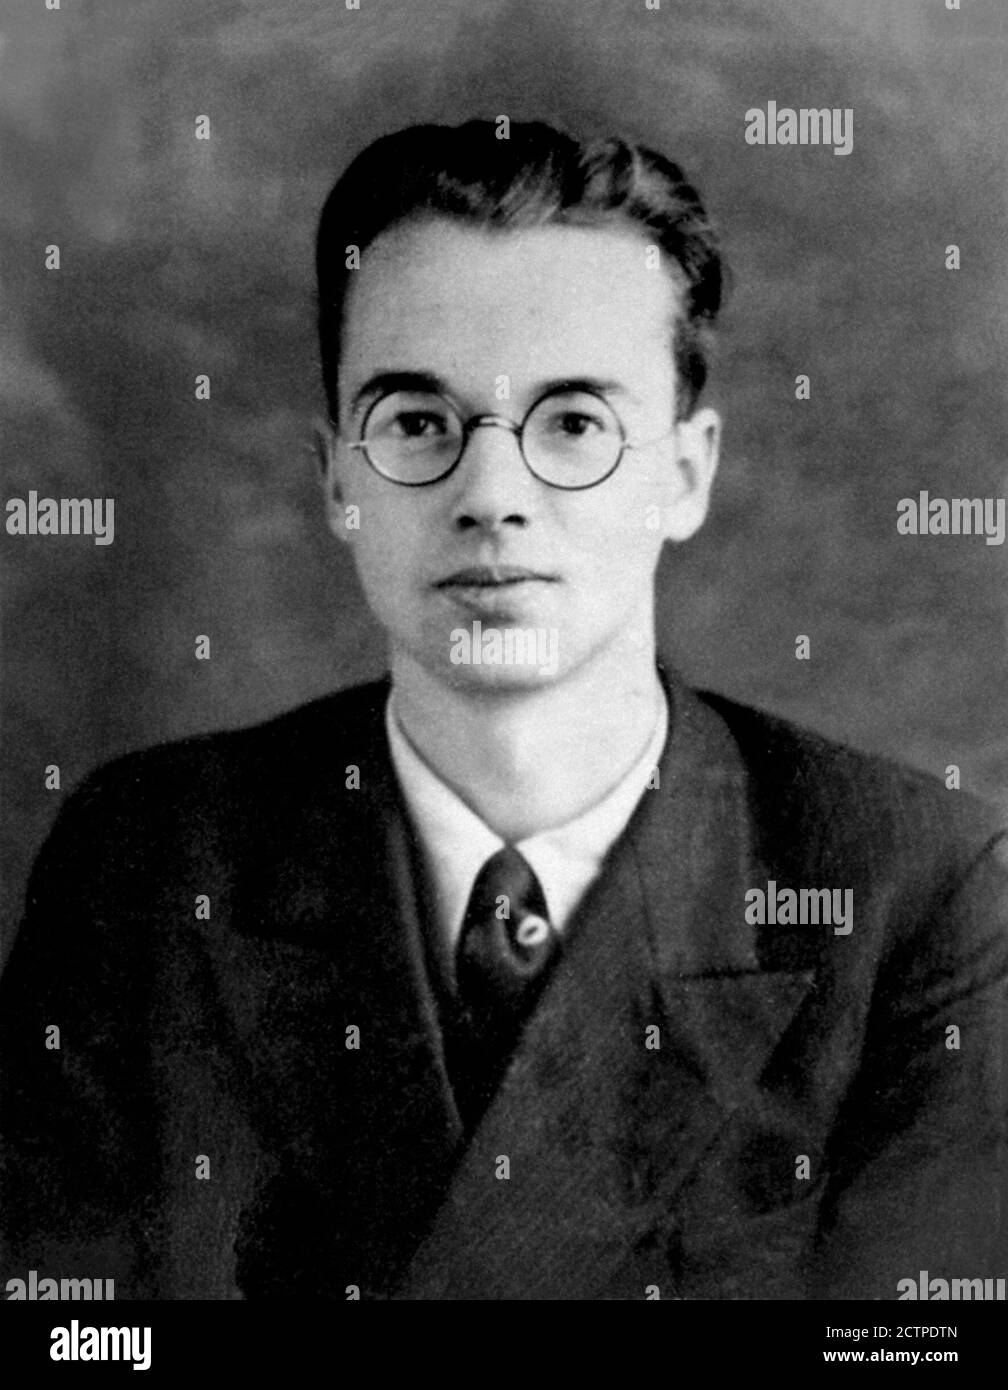 Klaus Fuchs. Polizeifoto des deutschen theoretischen Physikers Klaus Emil Julius Fuchs (1911-1988), c. 1940. Fuchs war ein sowjetischer Spion, der der UdSSR Informationen aus dem Manhattan-Projekt lieferte Stockfoto